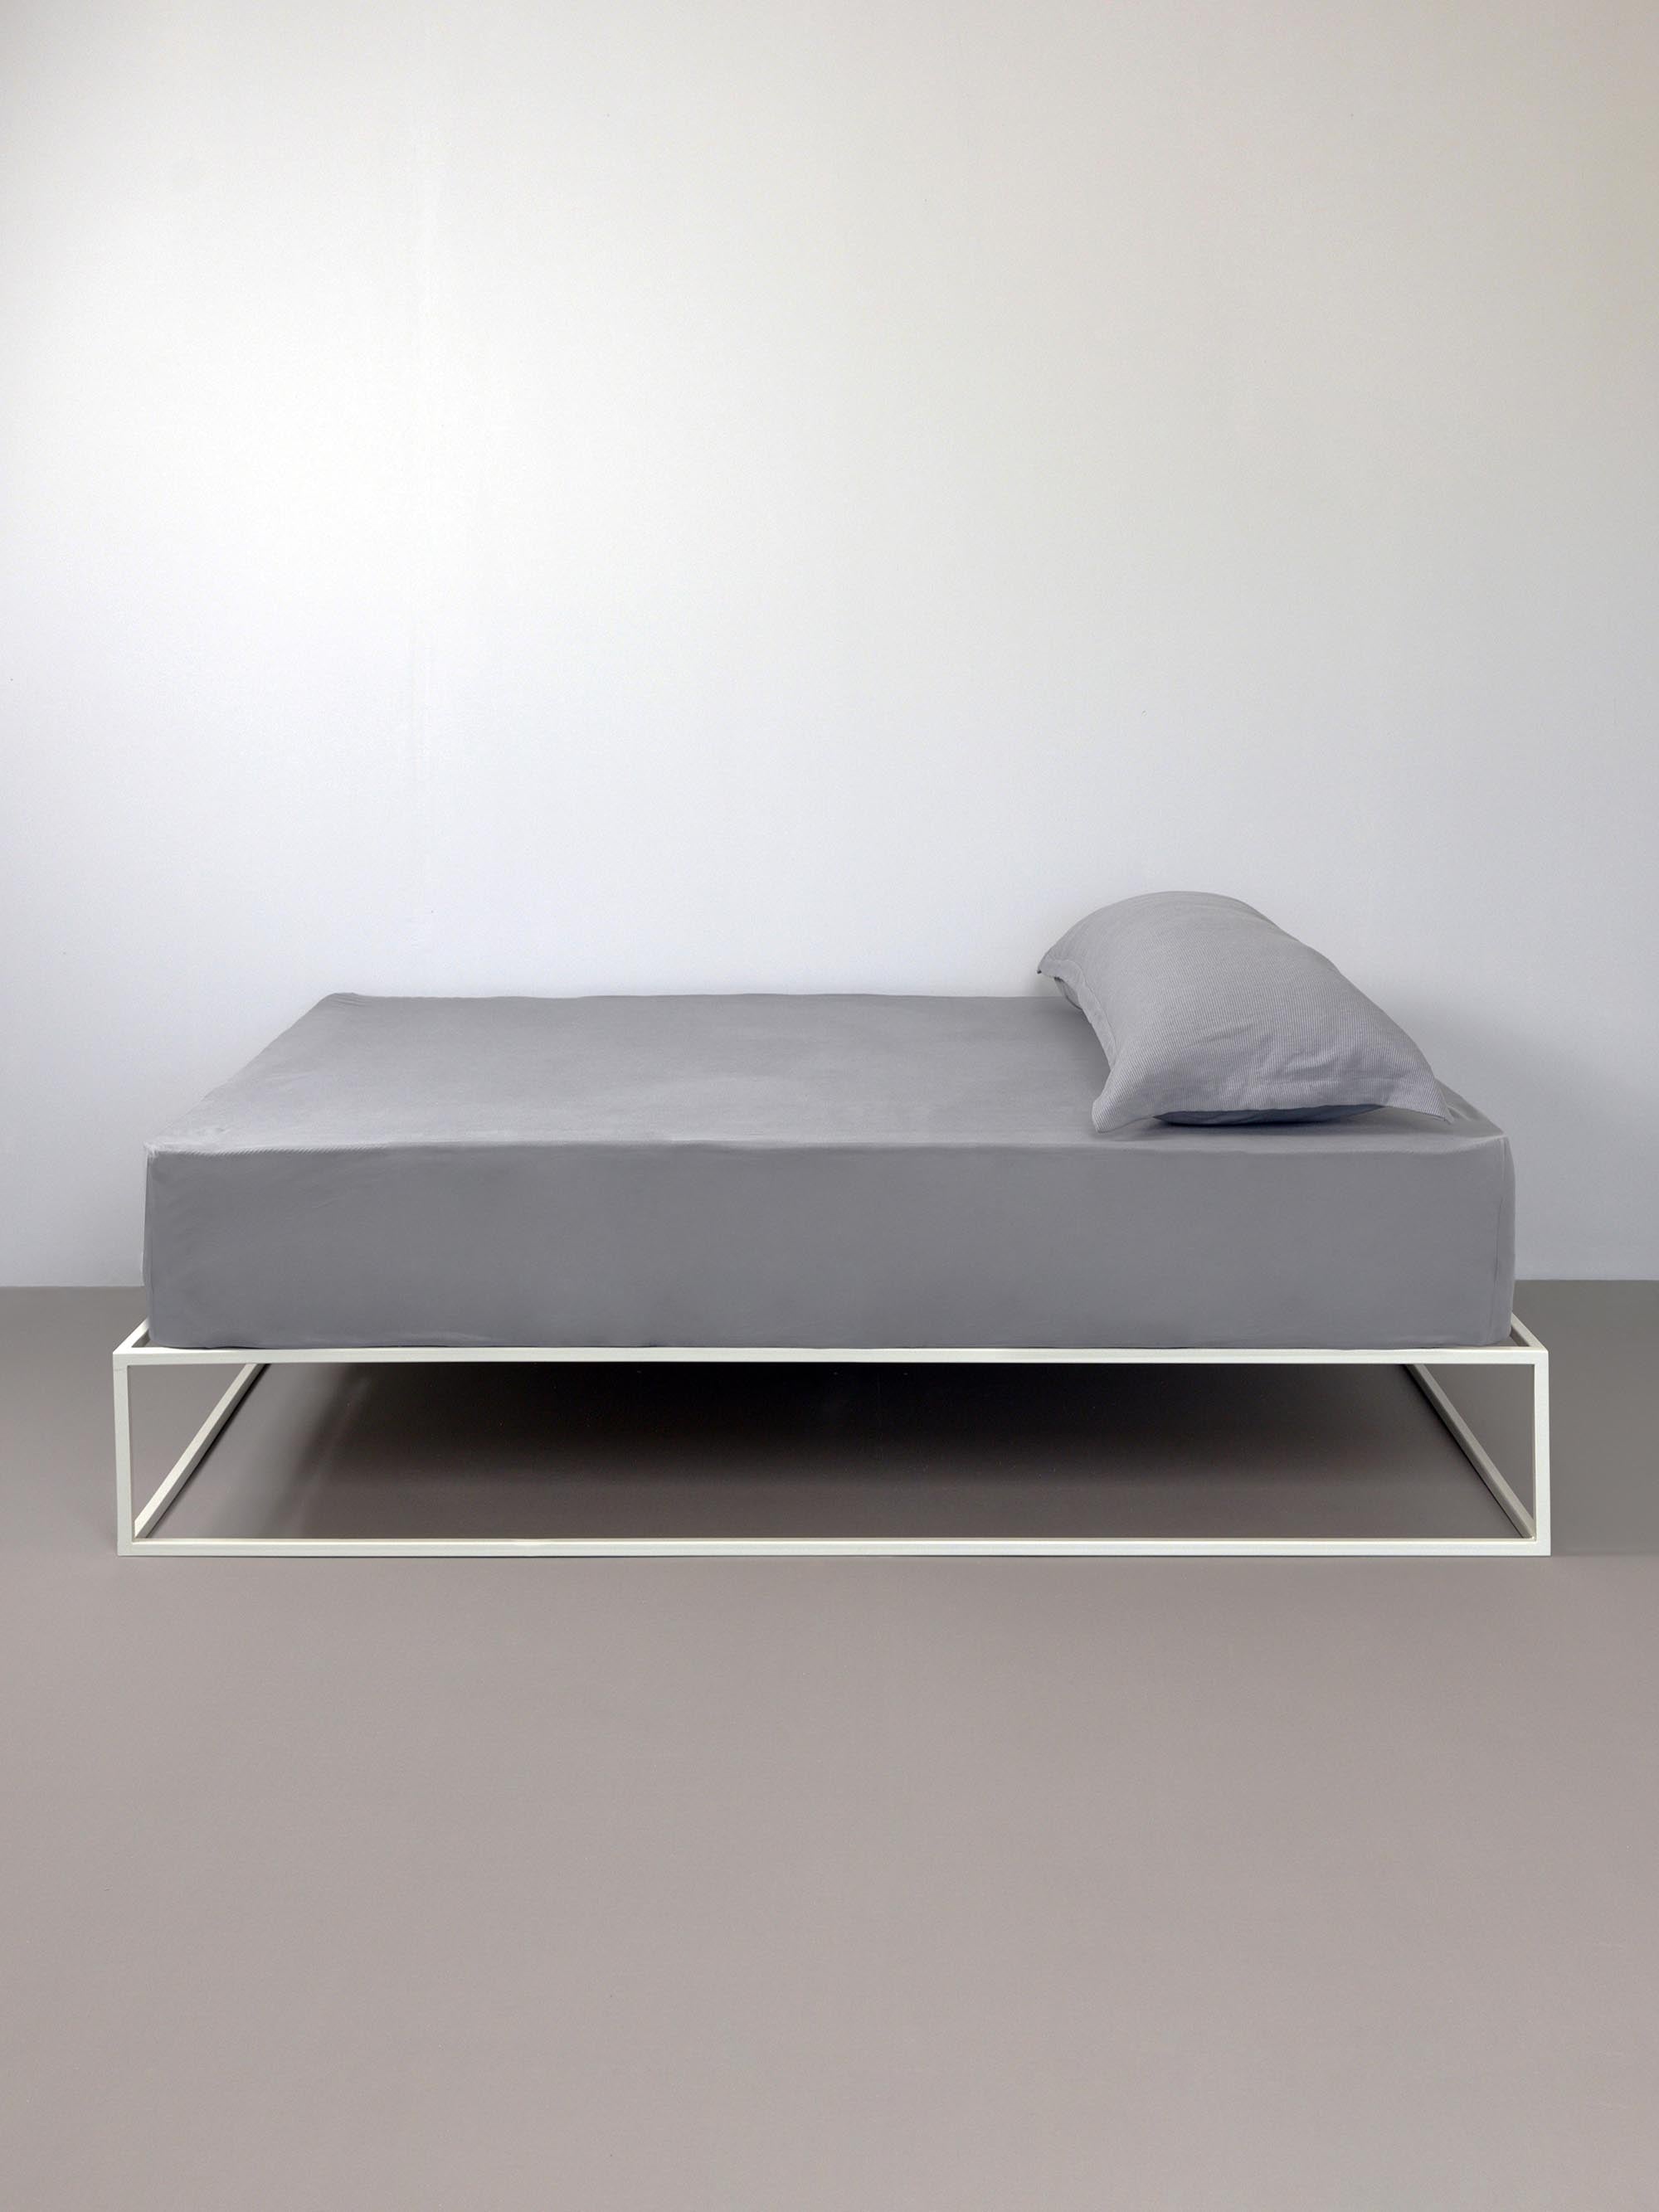 מיטת ברזל לבנה עם סדין, כרית וציפית לכרית ארוכה בצבע  אפור